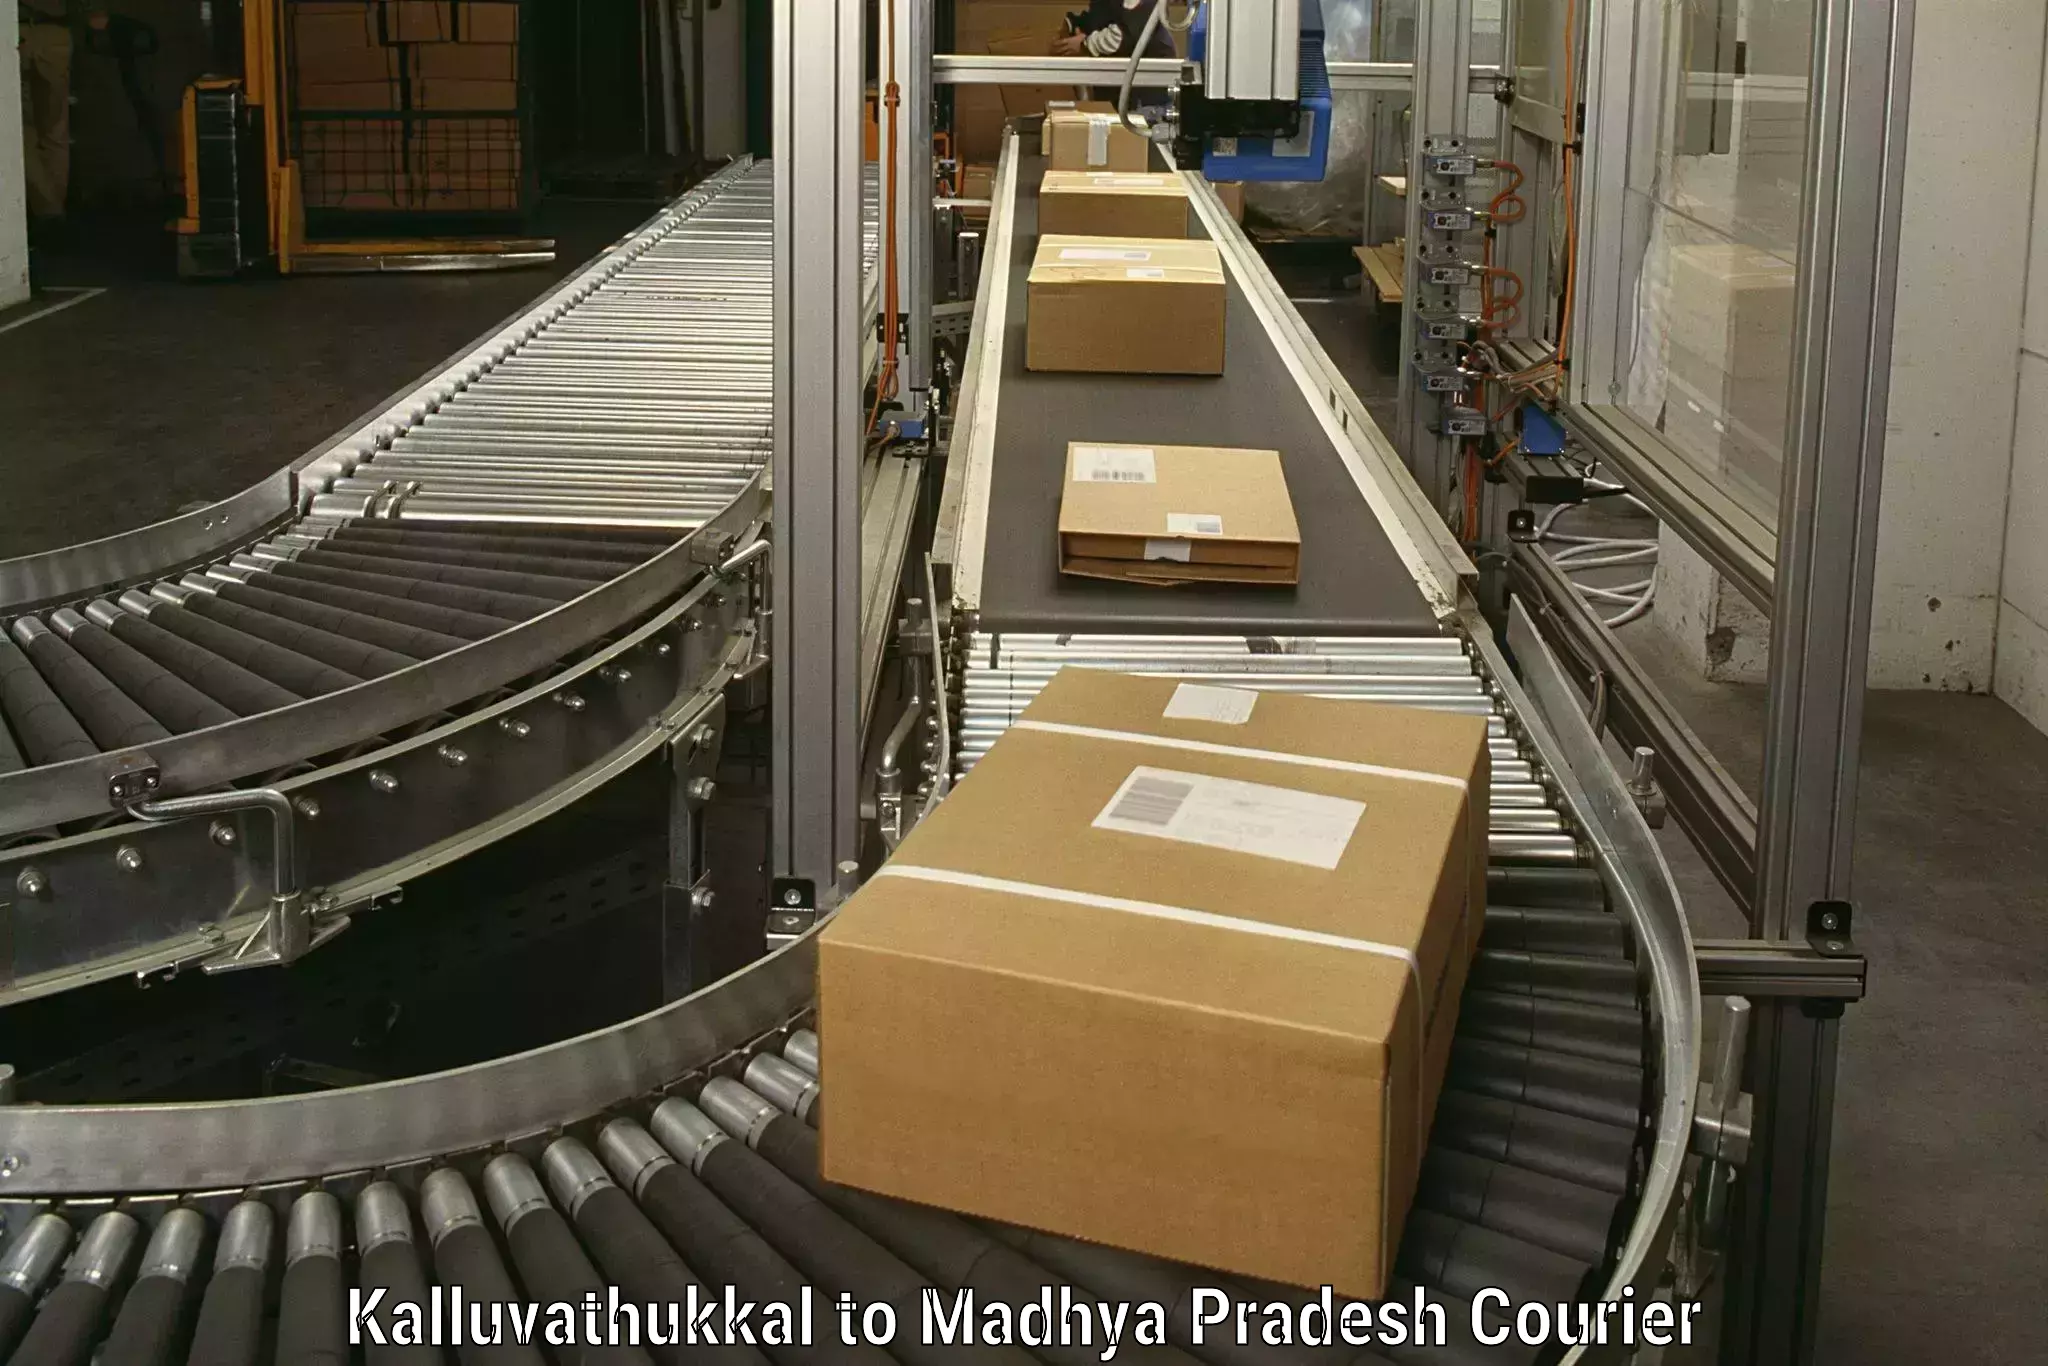 Professional moving company Kalluvathukkal to Silwani